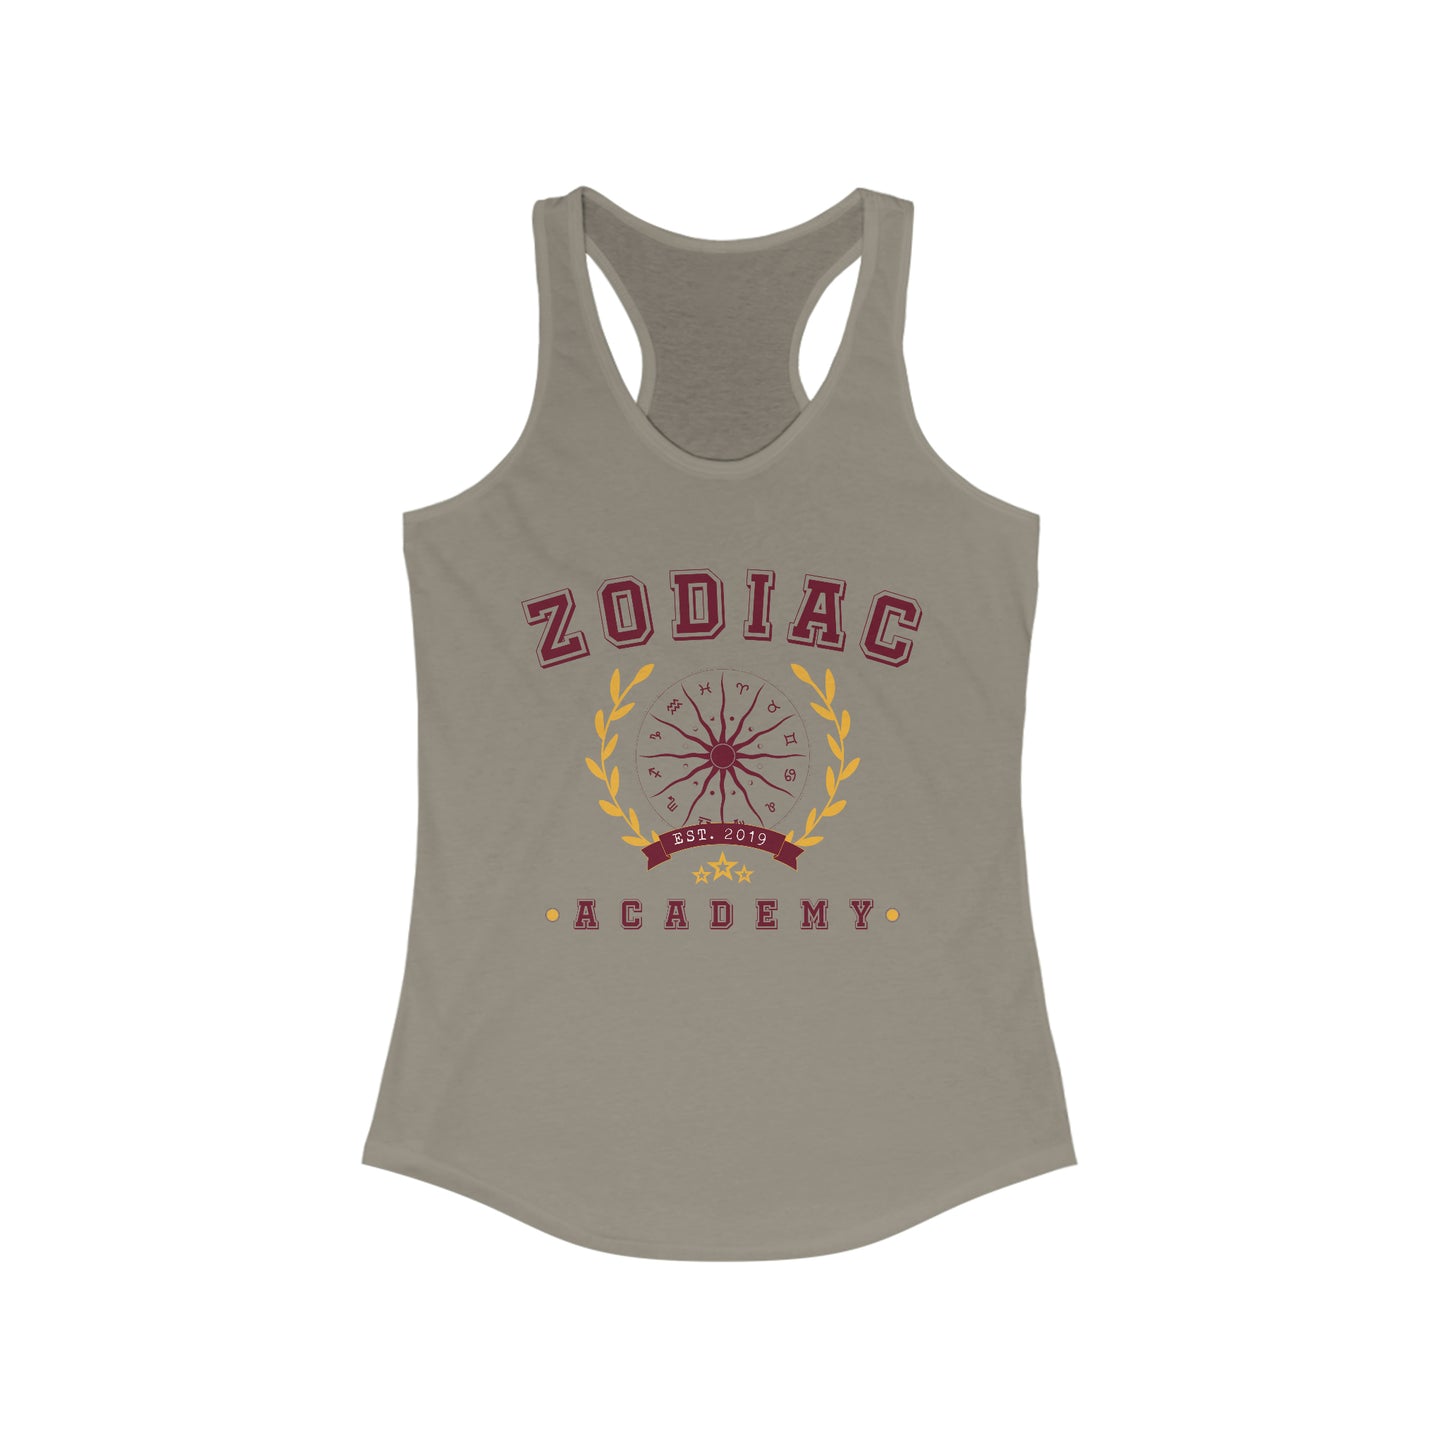 Zodiac Academy Racerback Tank